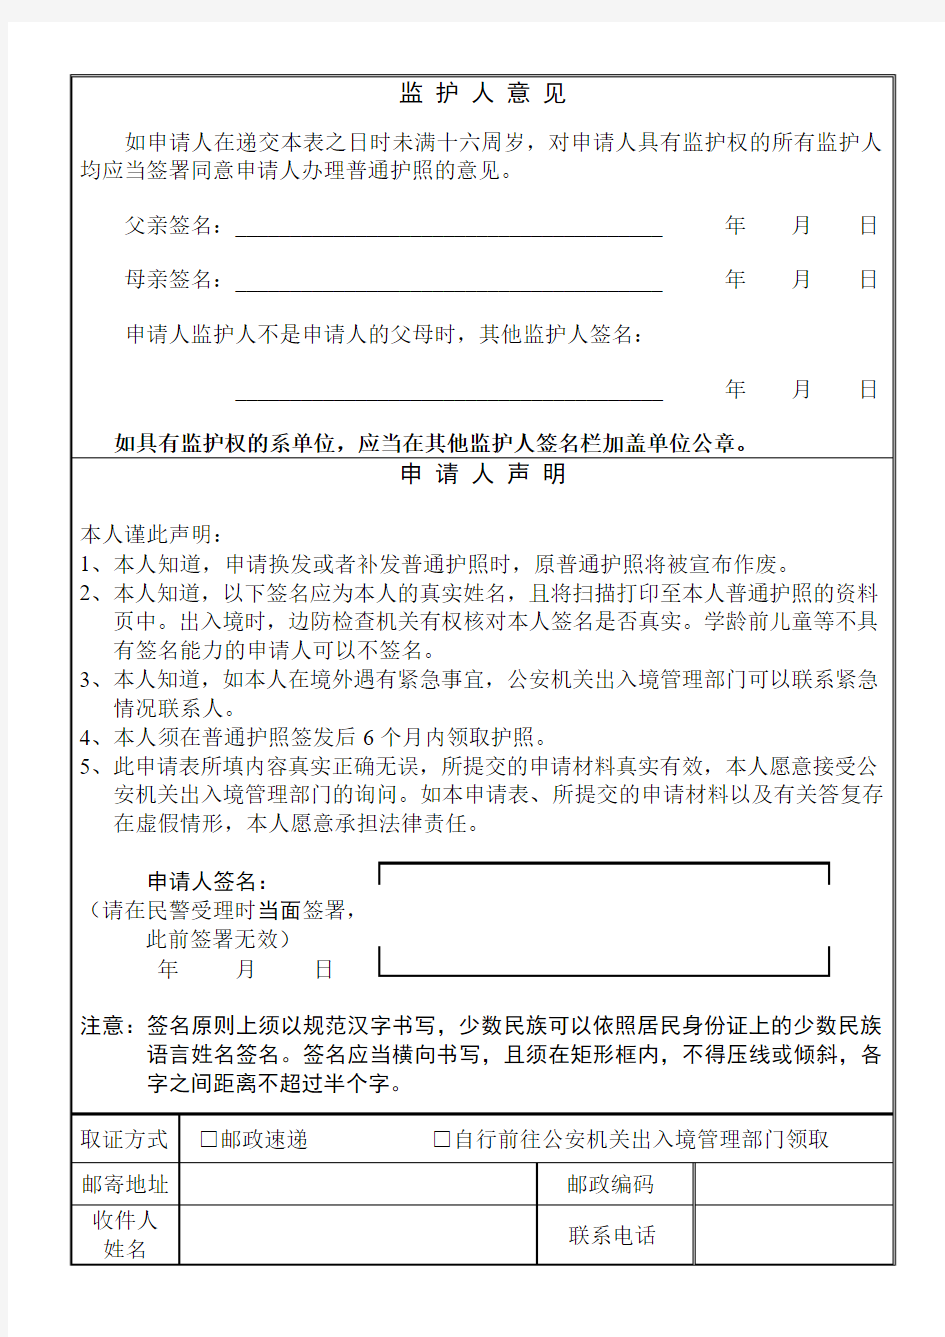 中国公民普通护照申请表-天津出入境管理局